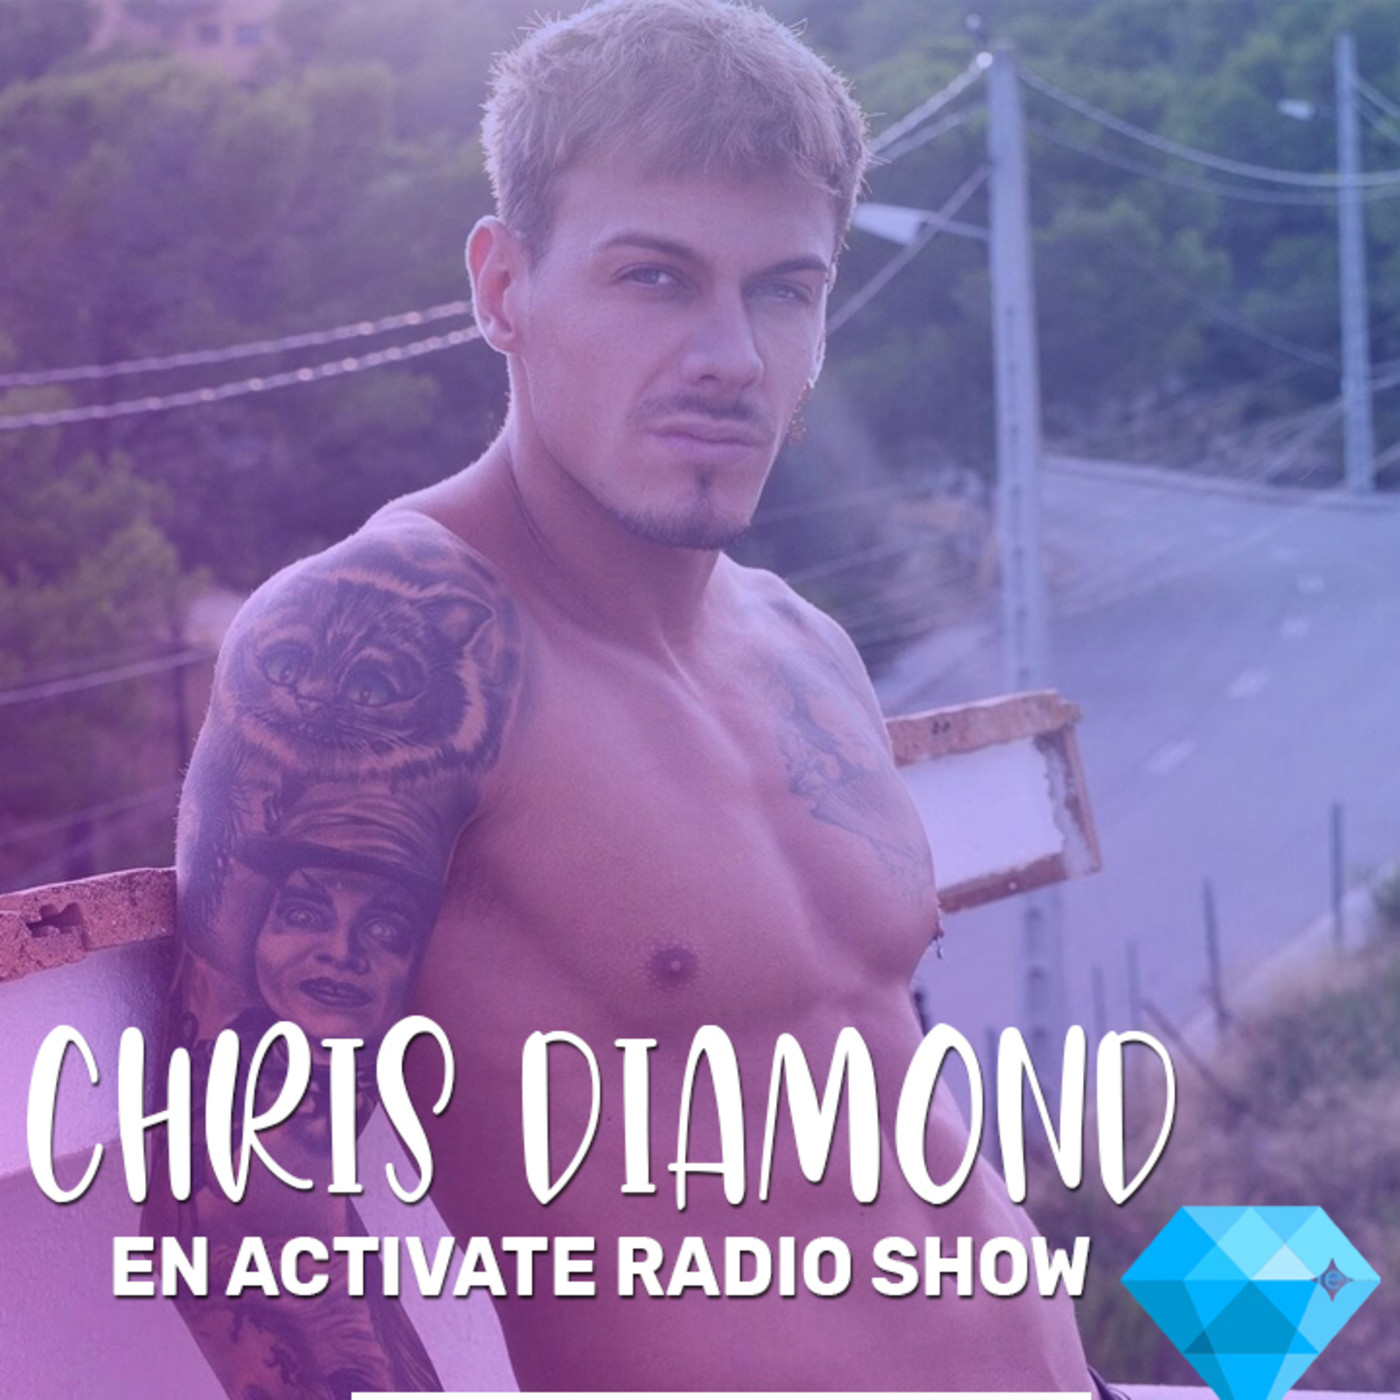 Entrevista A Chris Diamond Activate Radio Show En Arenisca Fm En Mp3 29 12 A Las 14 49 07 38